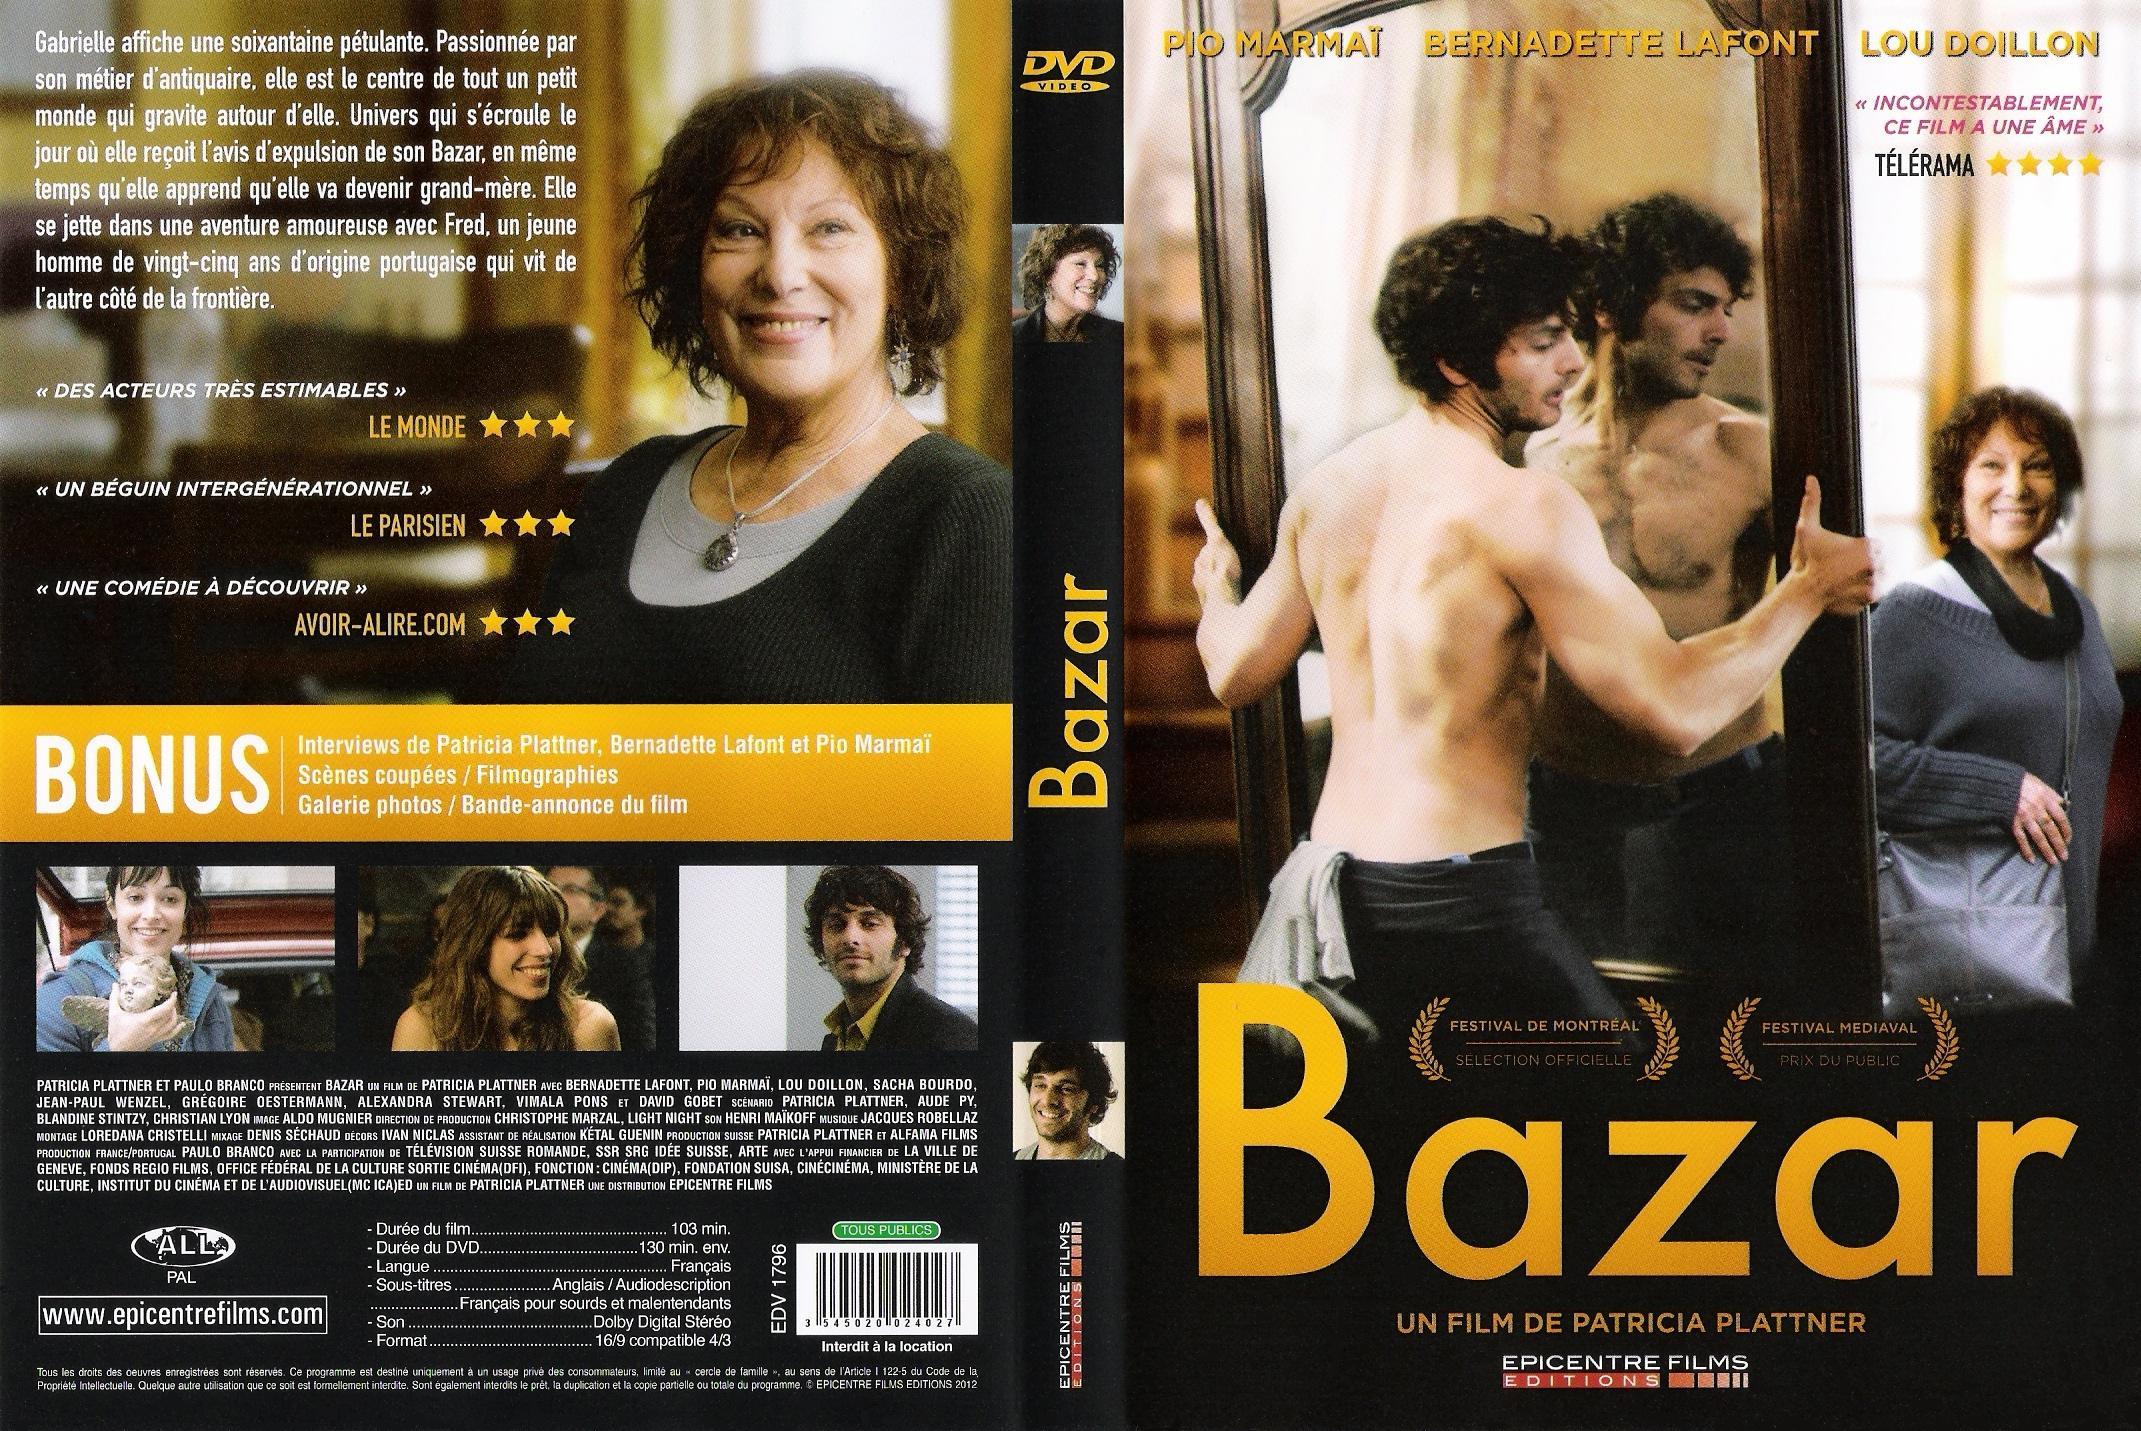 Jaquette DVD Bazar